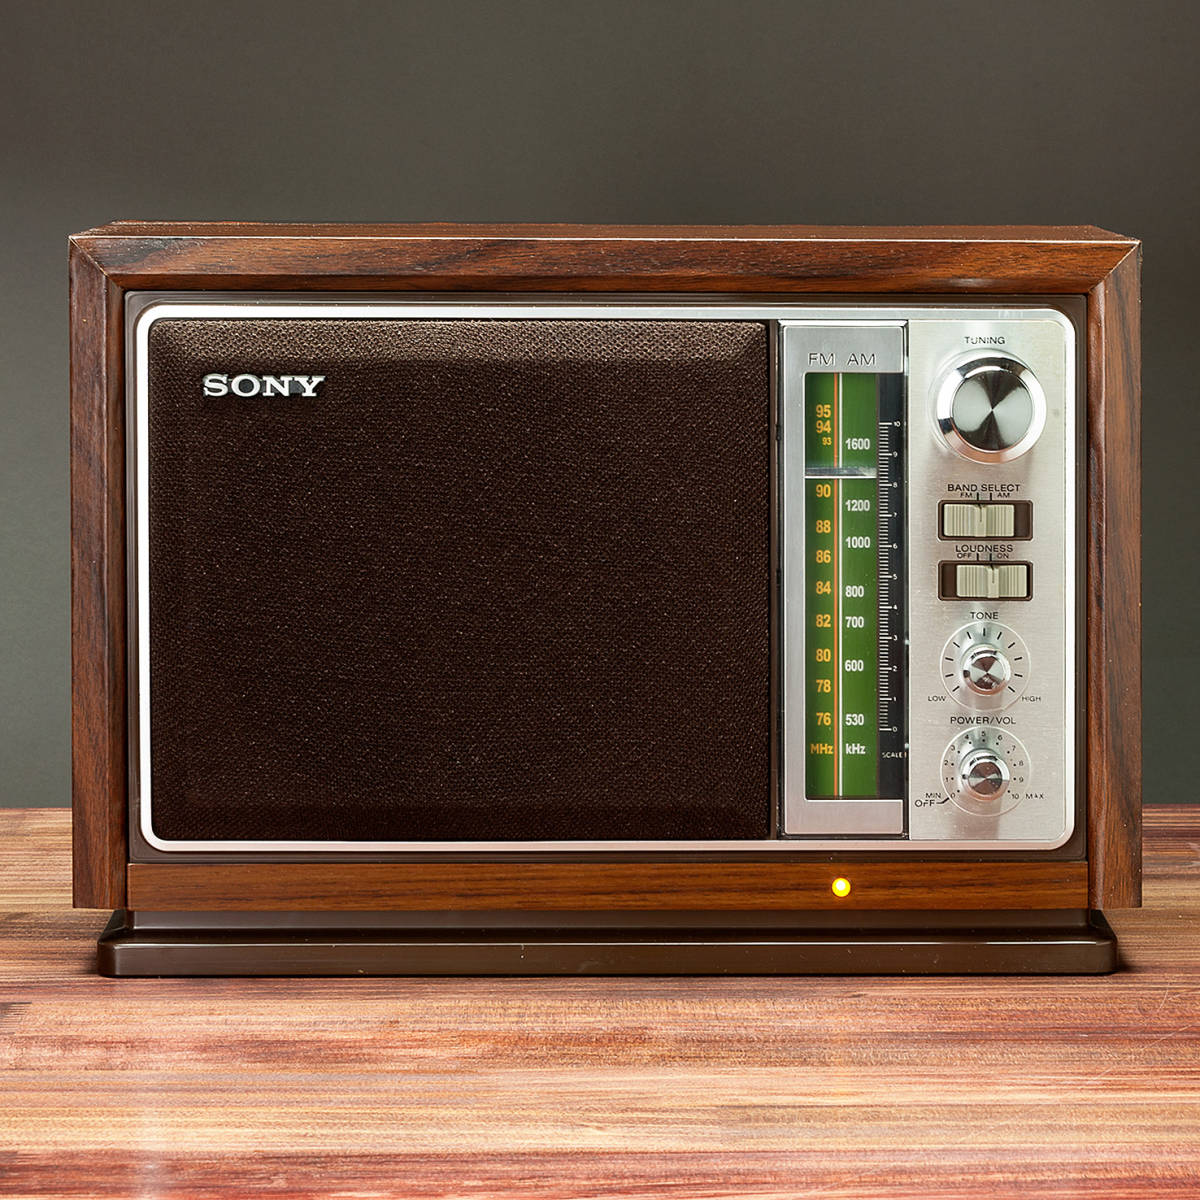 SONY транзистор радио ICF-9740 AM/FM Showa Retro . интерьер . выдающийся!FM. 95MHz до прием смартфон Appli. звук . можно наслаждаться.